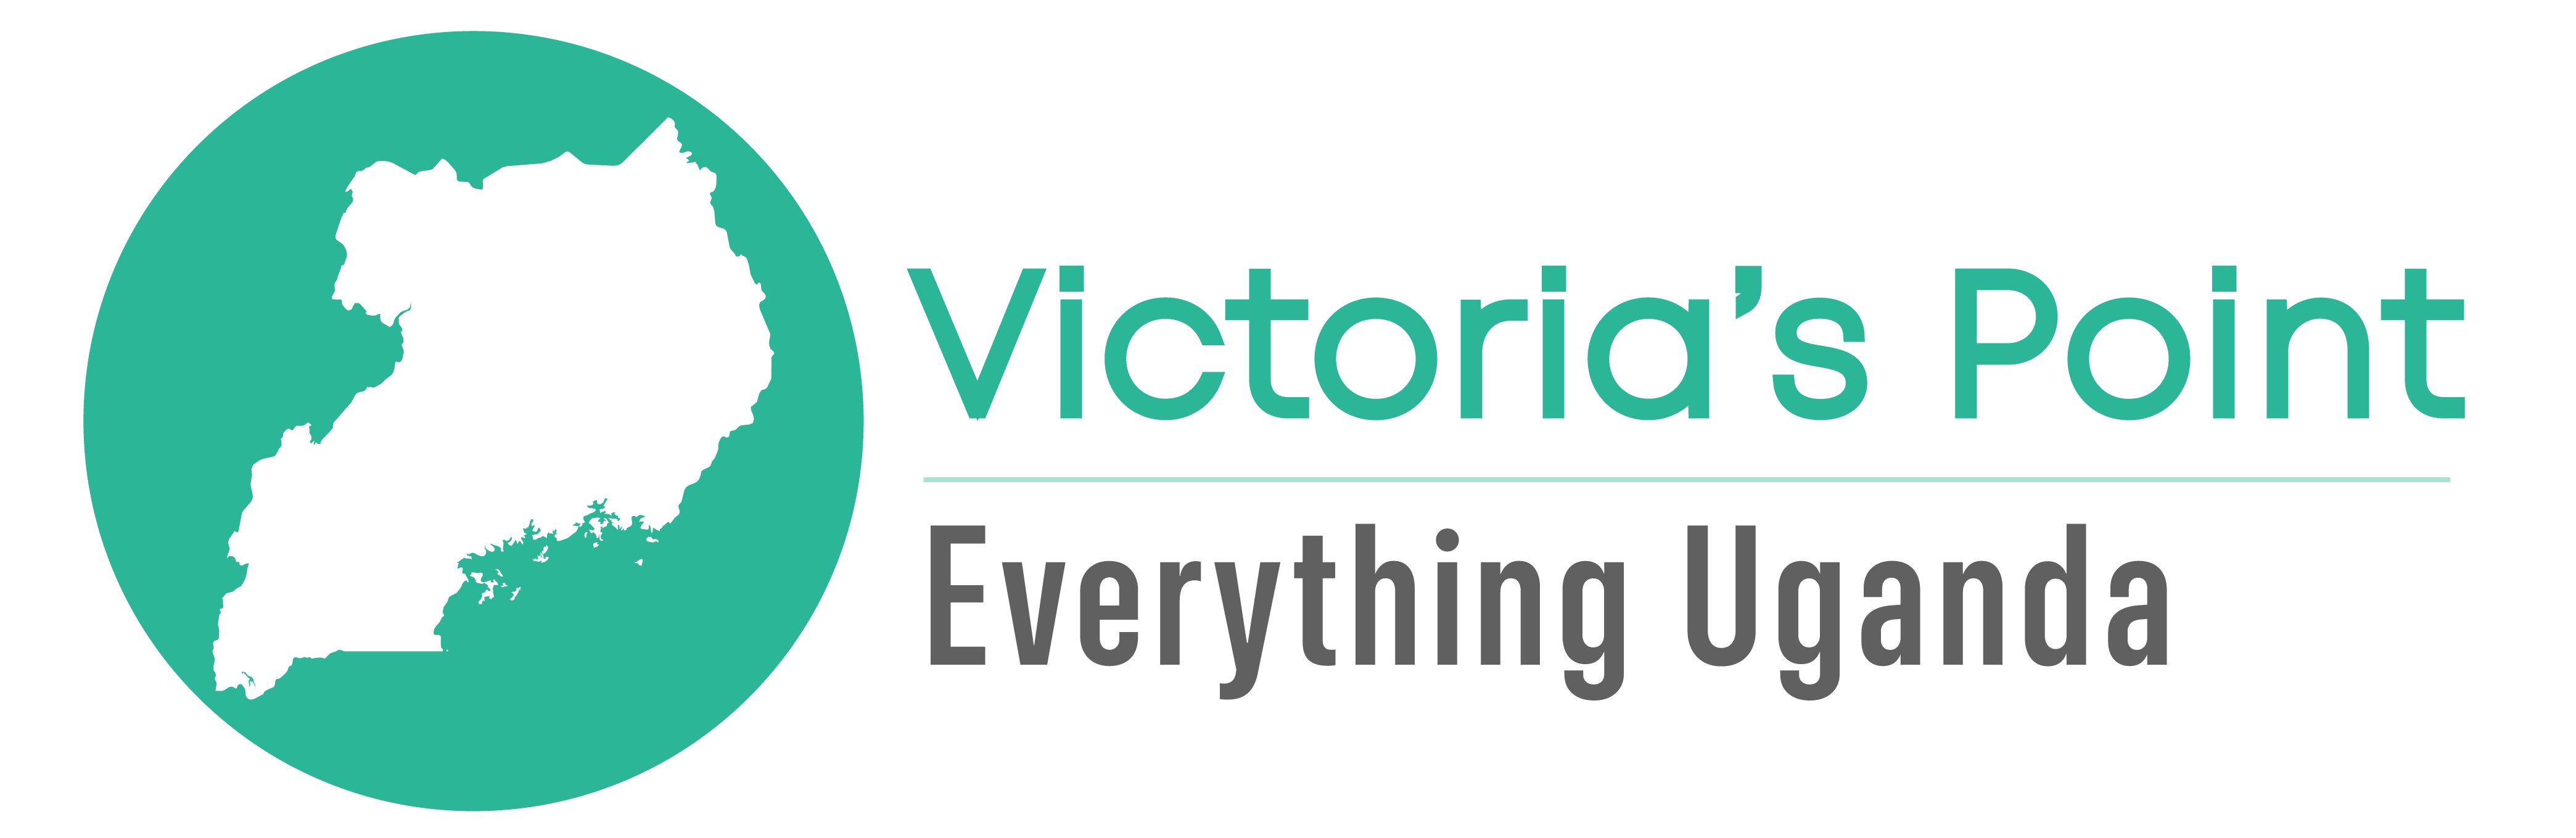 Victoria's Point